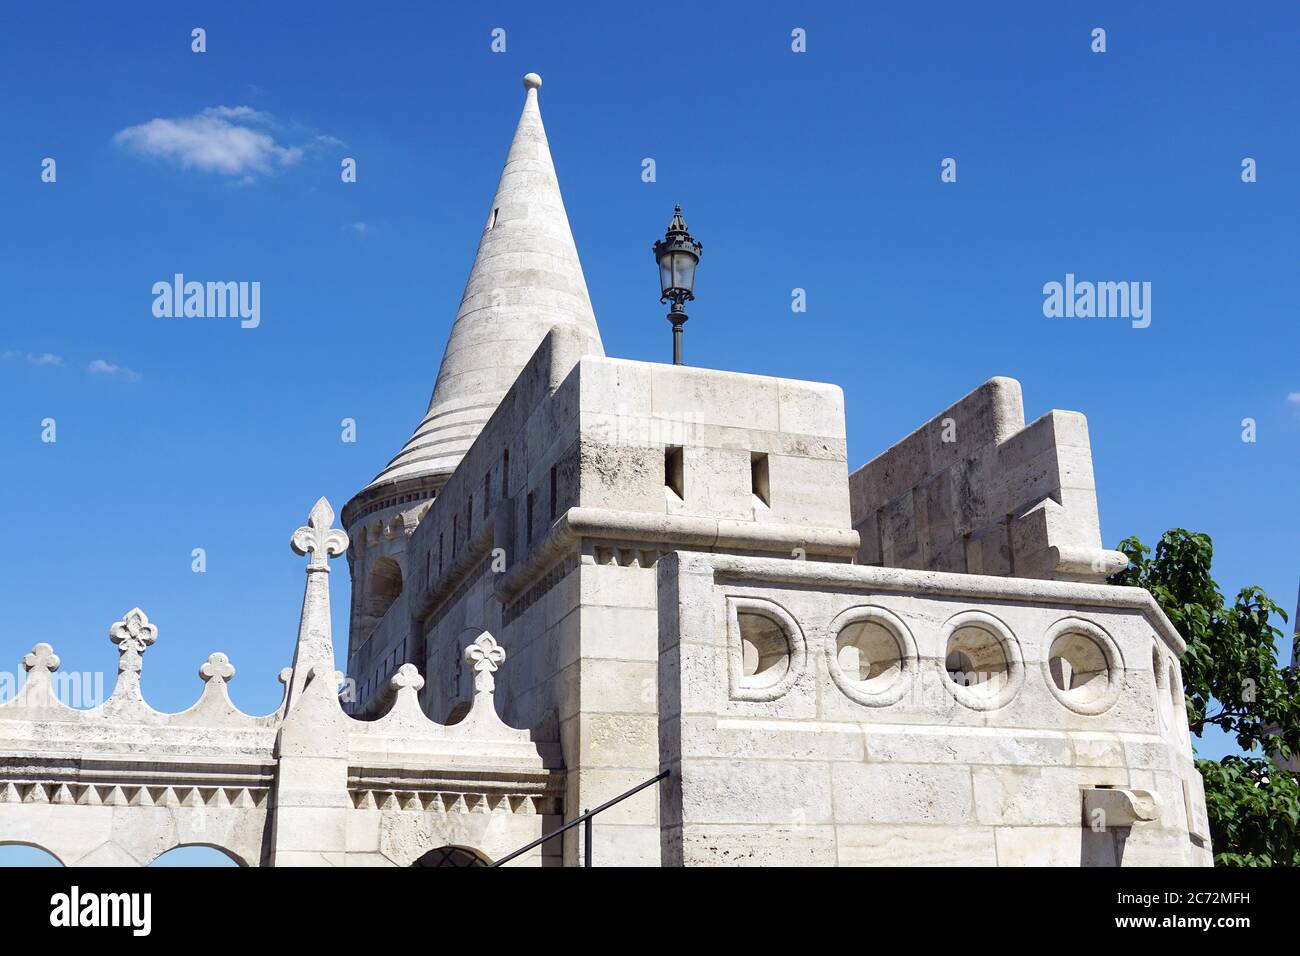 Le Bastion des pêcheurs est une terrasse de style néo-gothique et néo-roman située sur la rive Buda du Danube, le quartier du château, Budapest, Hubgary Banque D'Images